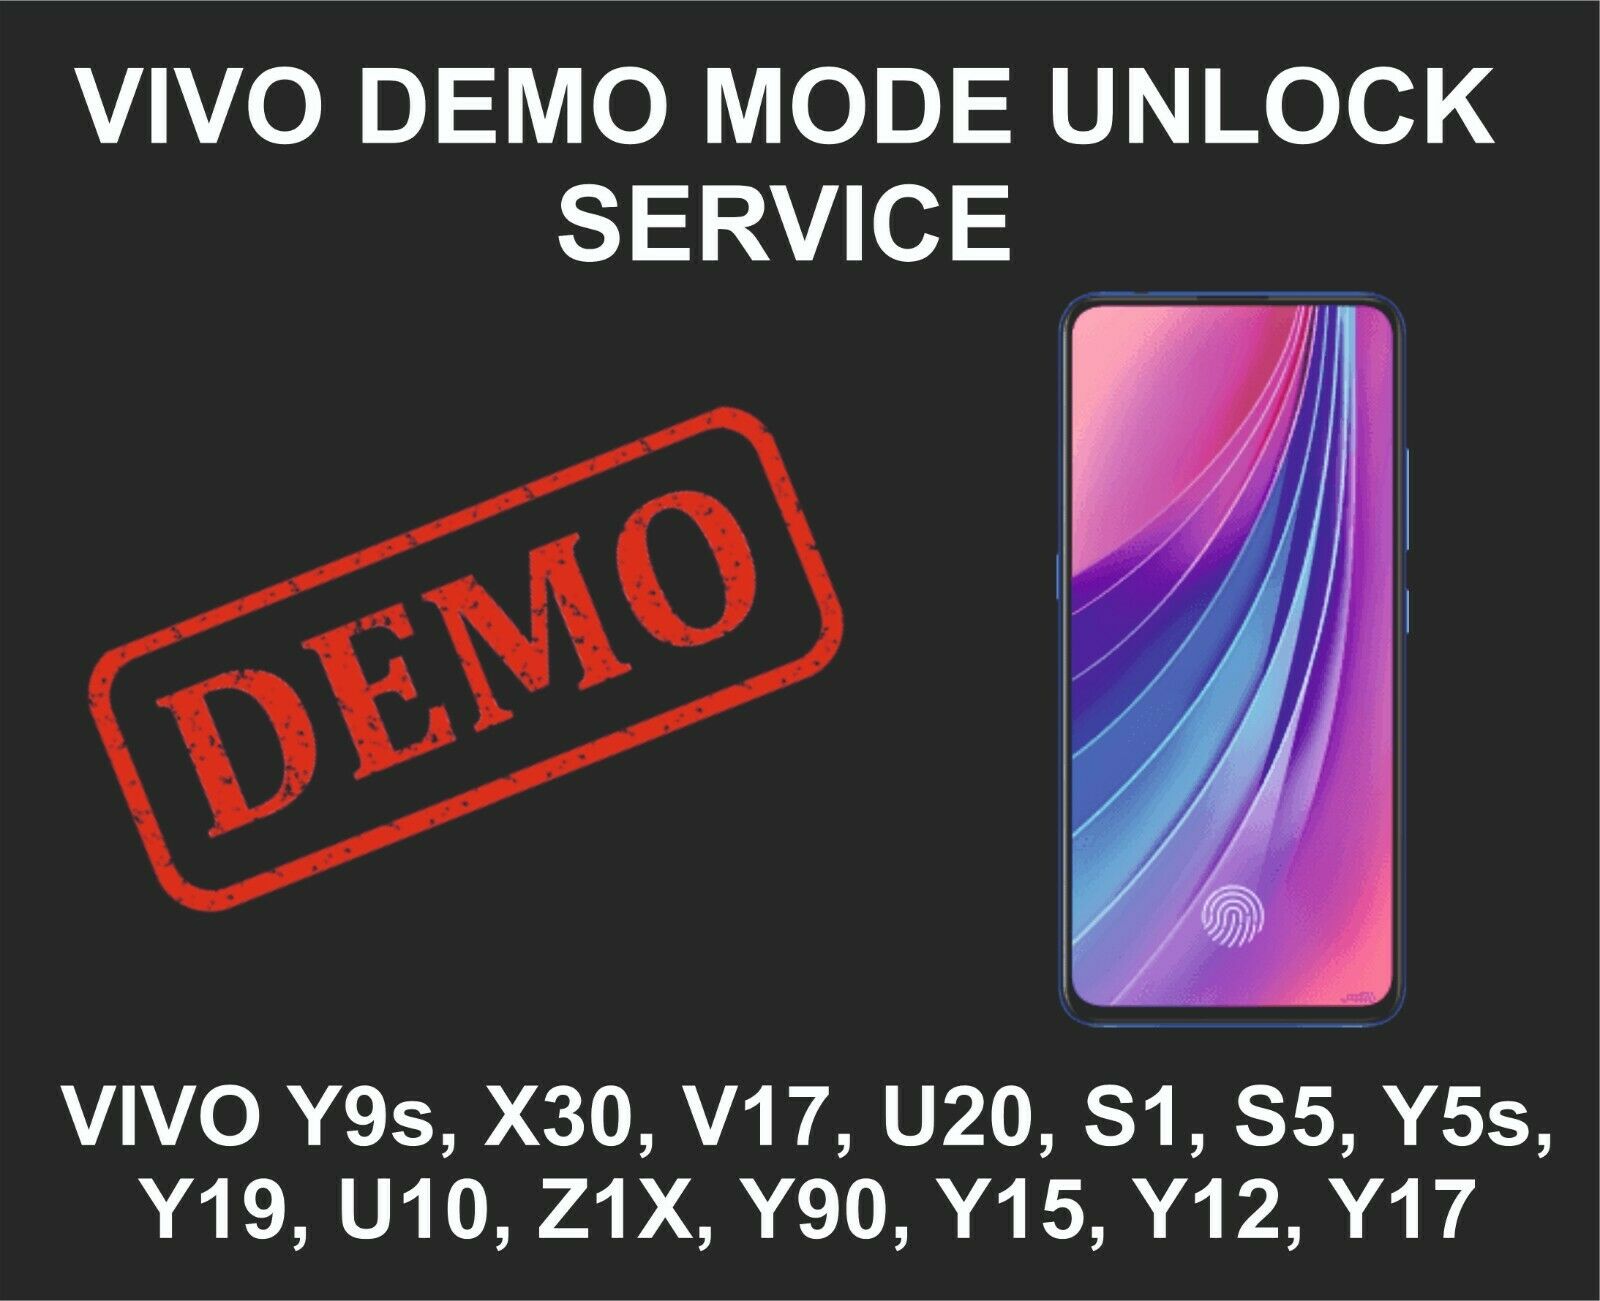 Vivo Demo Mode Unlock Service, Vivo Y9s, X30, V17, U20, S1, S5, Y5s, Y19, U10, Z